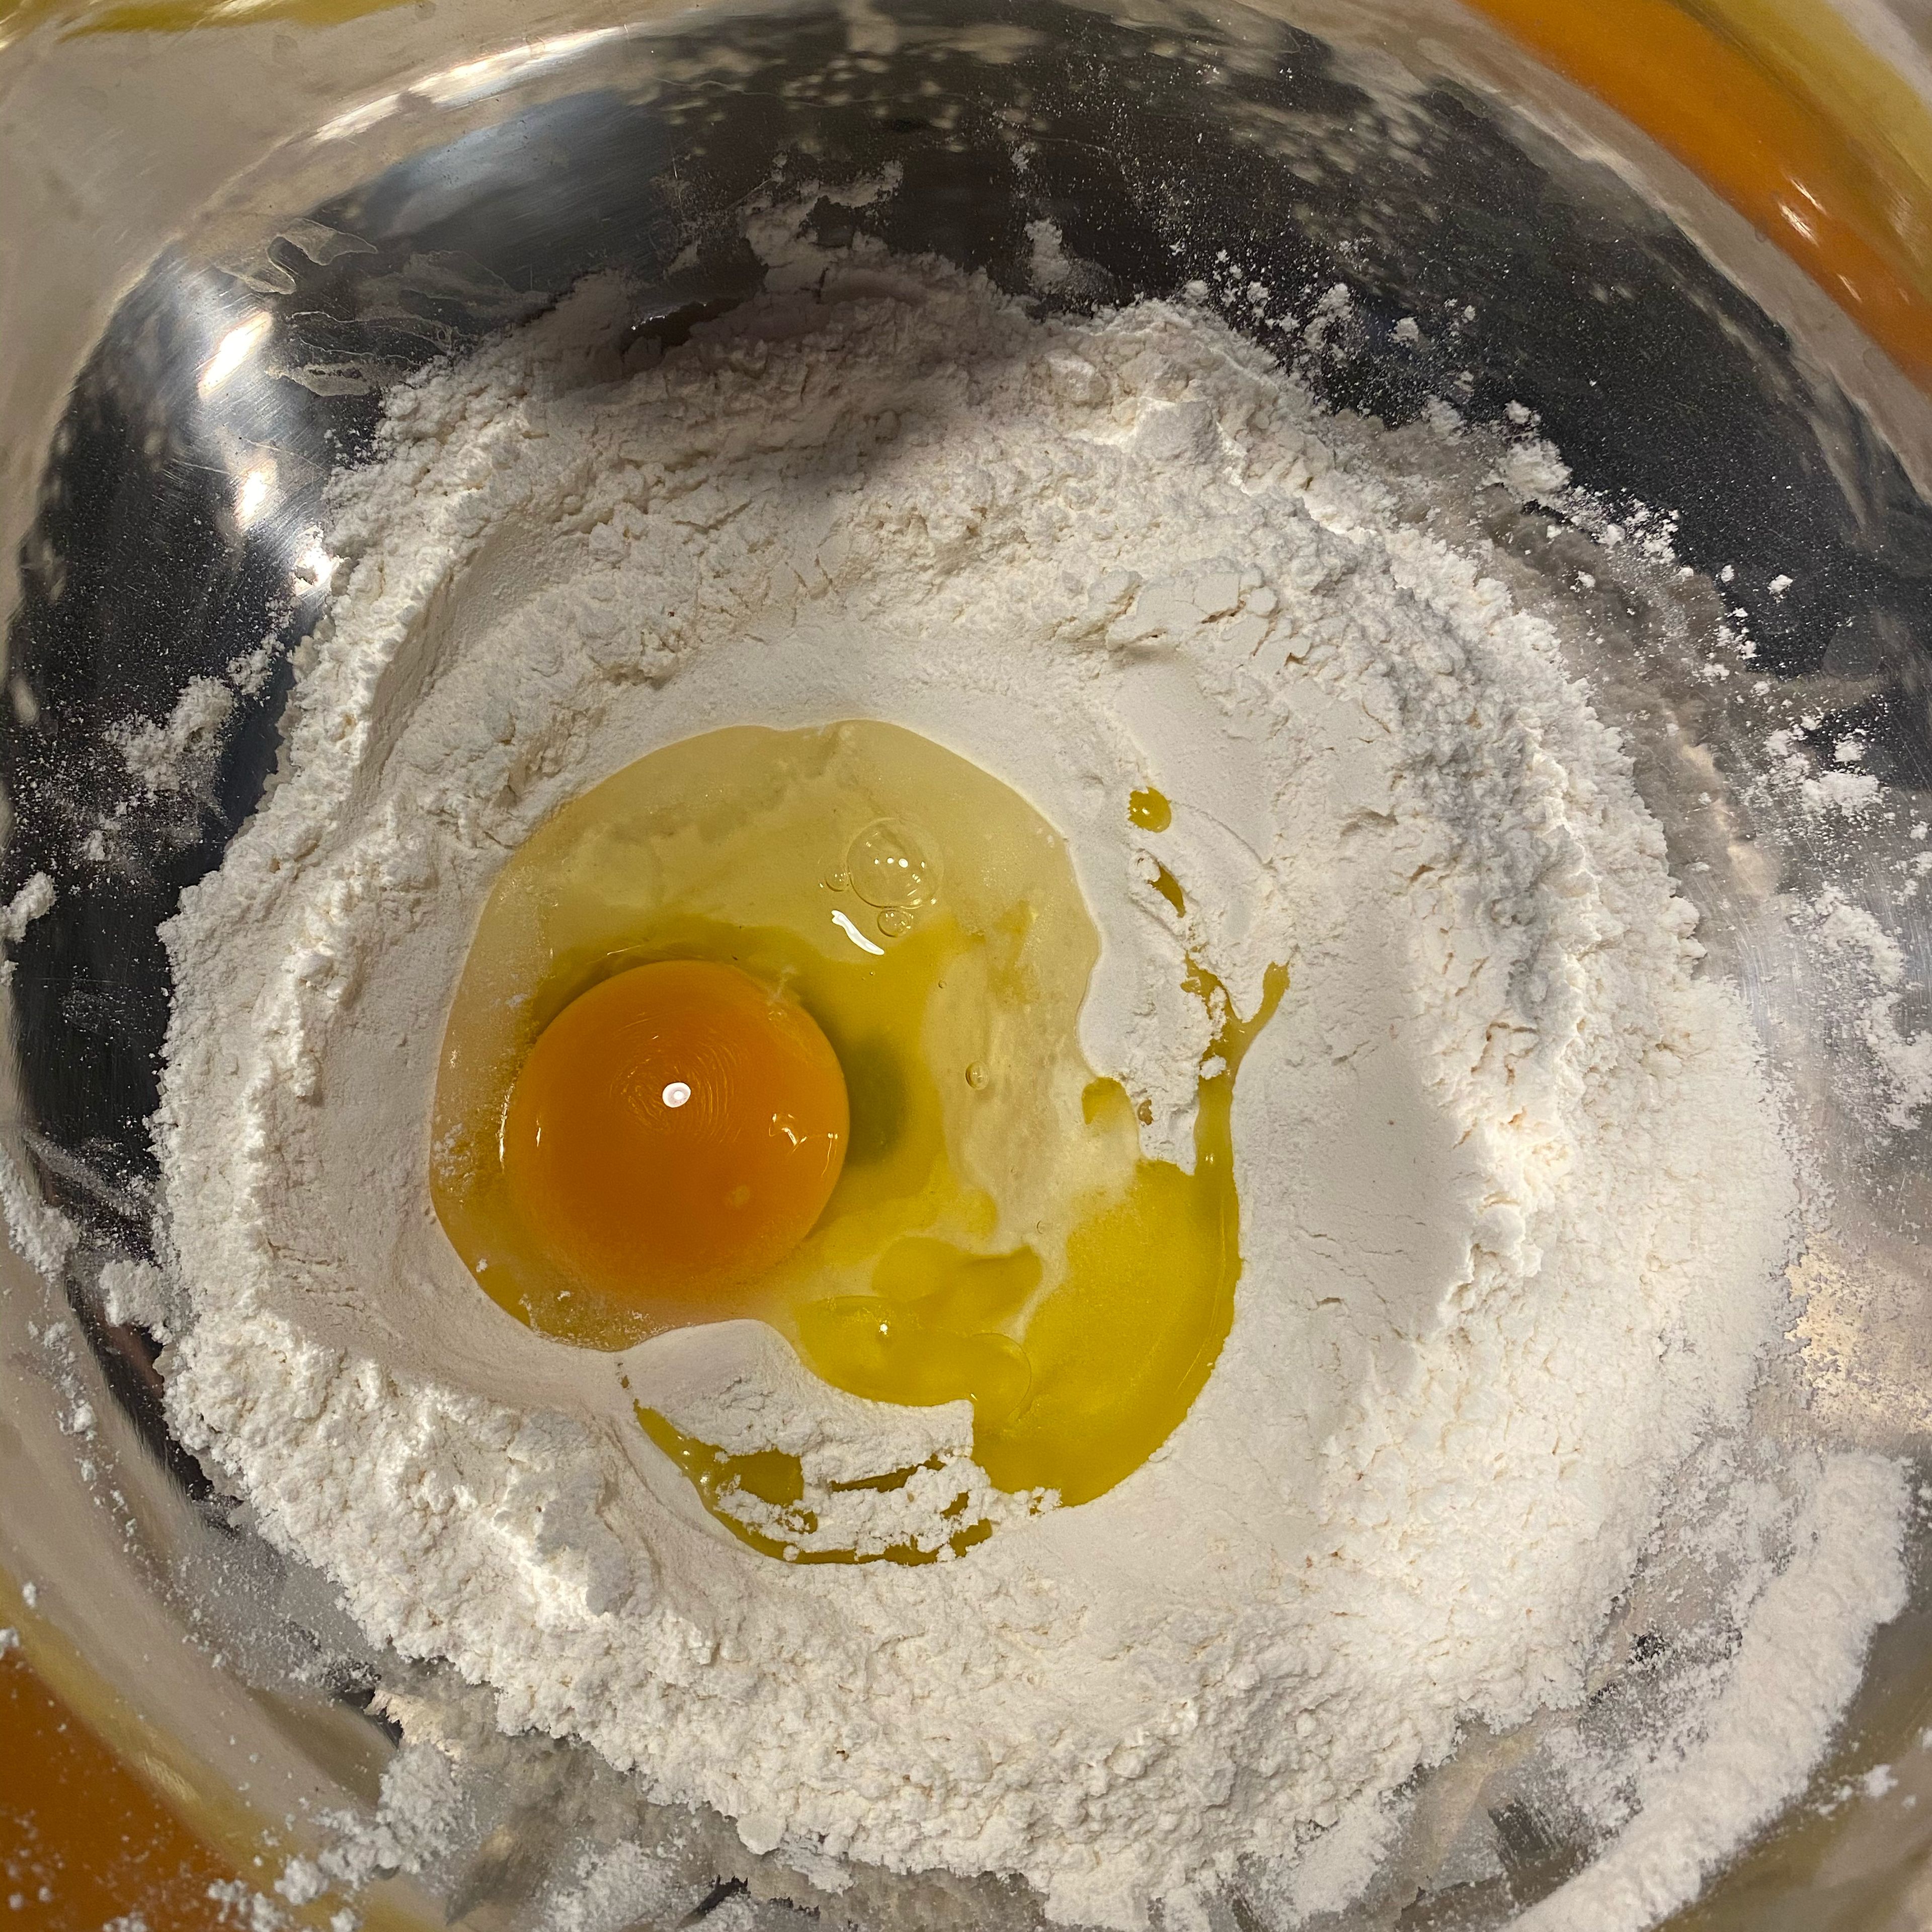 Den Teig aus Mehl, Ei, Salz und etwas Olivenöl verrühren und solange Wasser dazugeben bis der Teig sich schön kneten lässt ohne feucht zu sein.